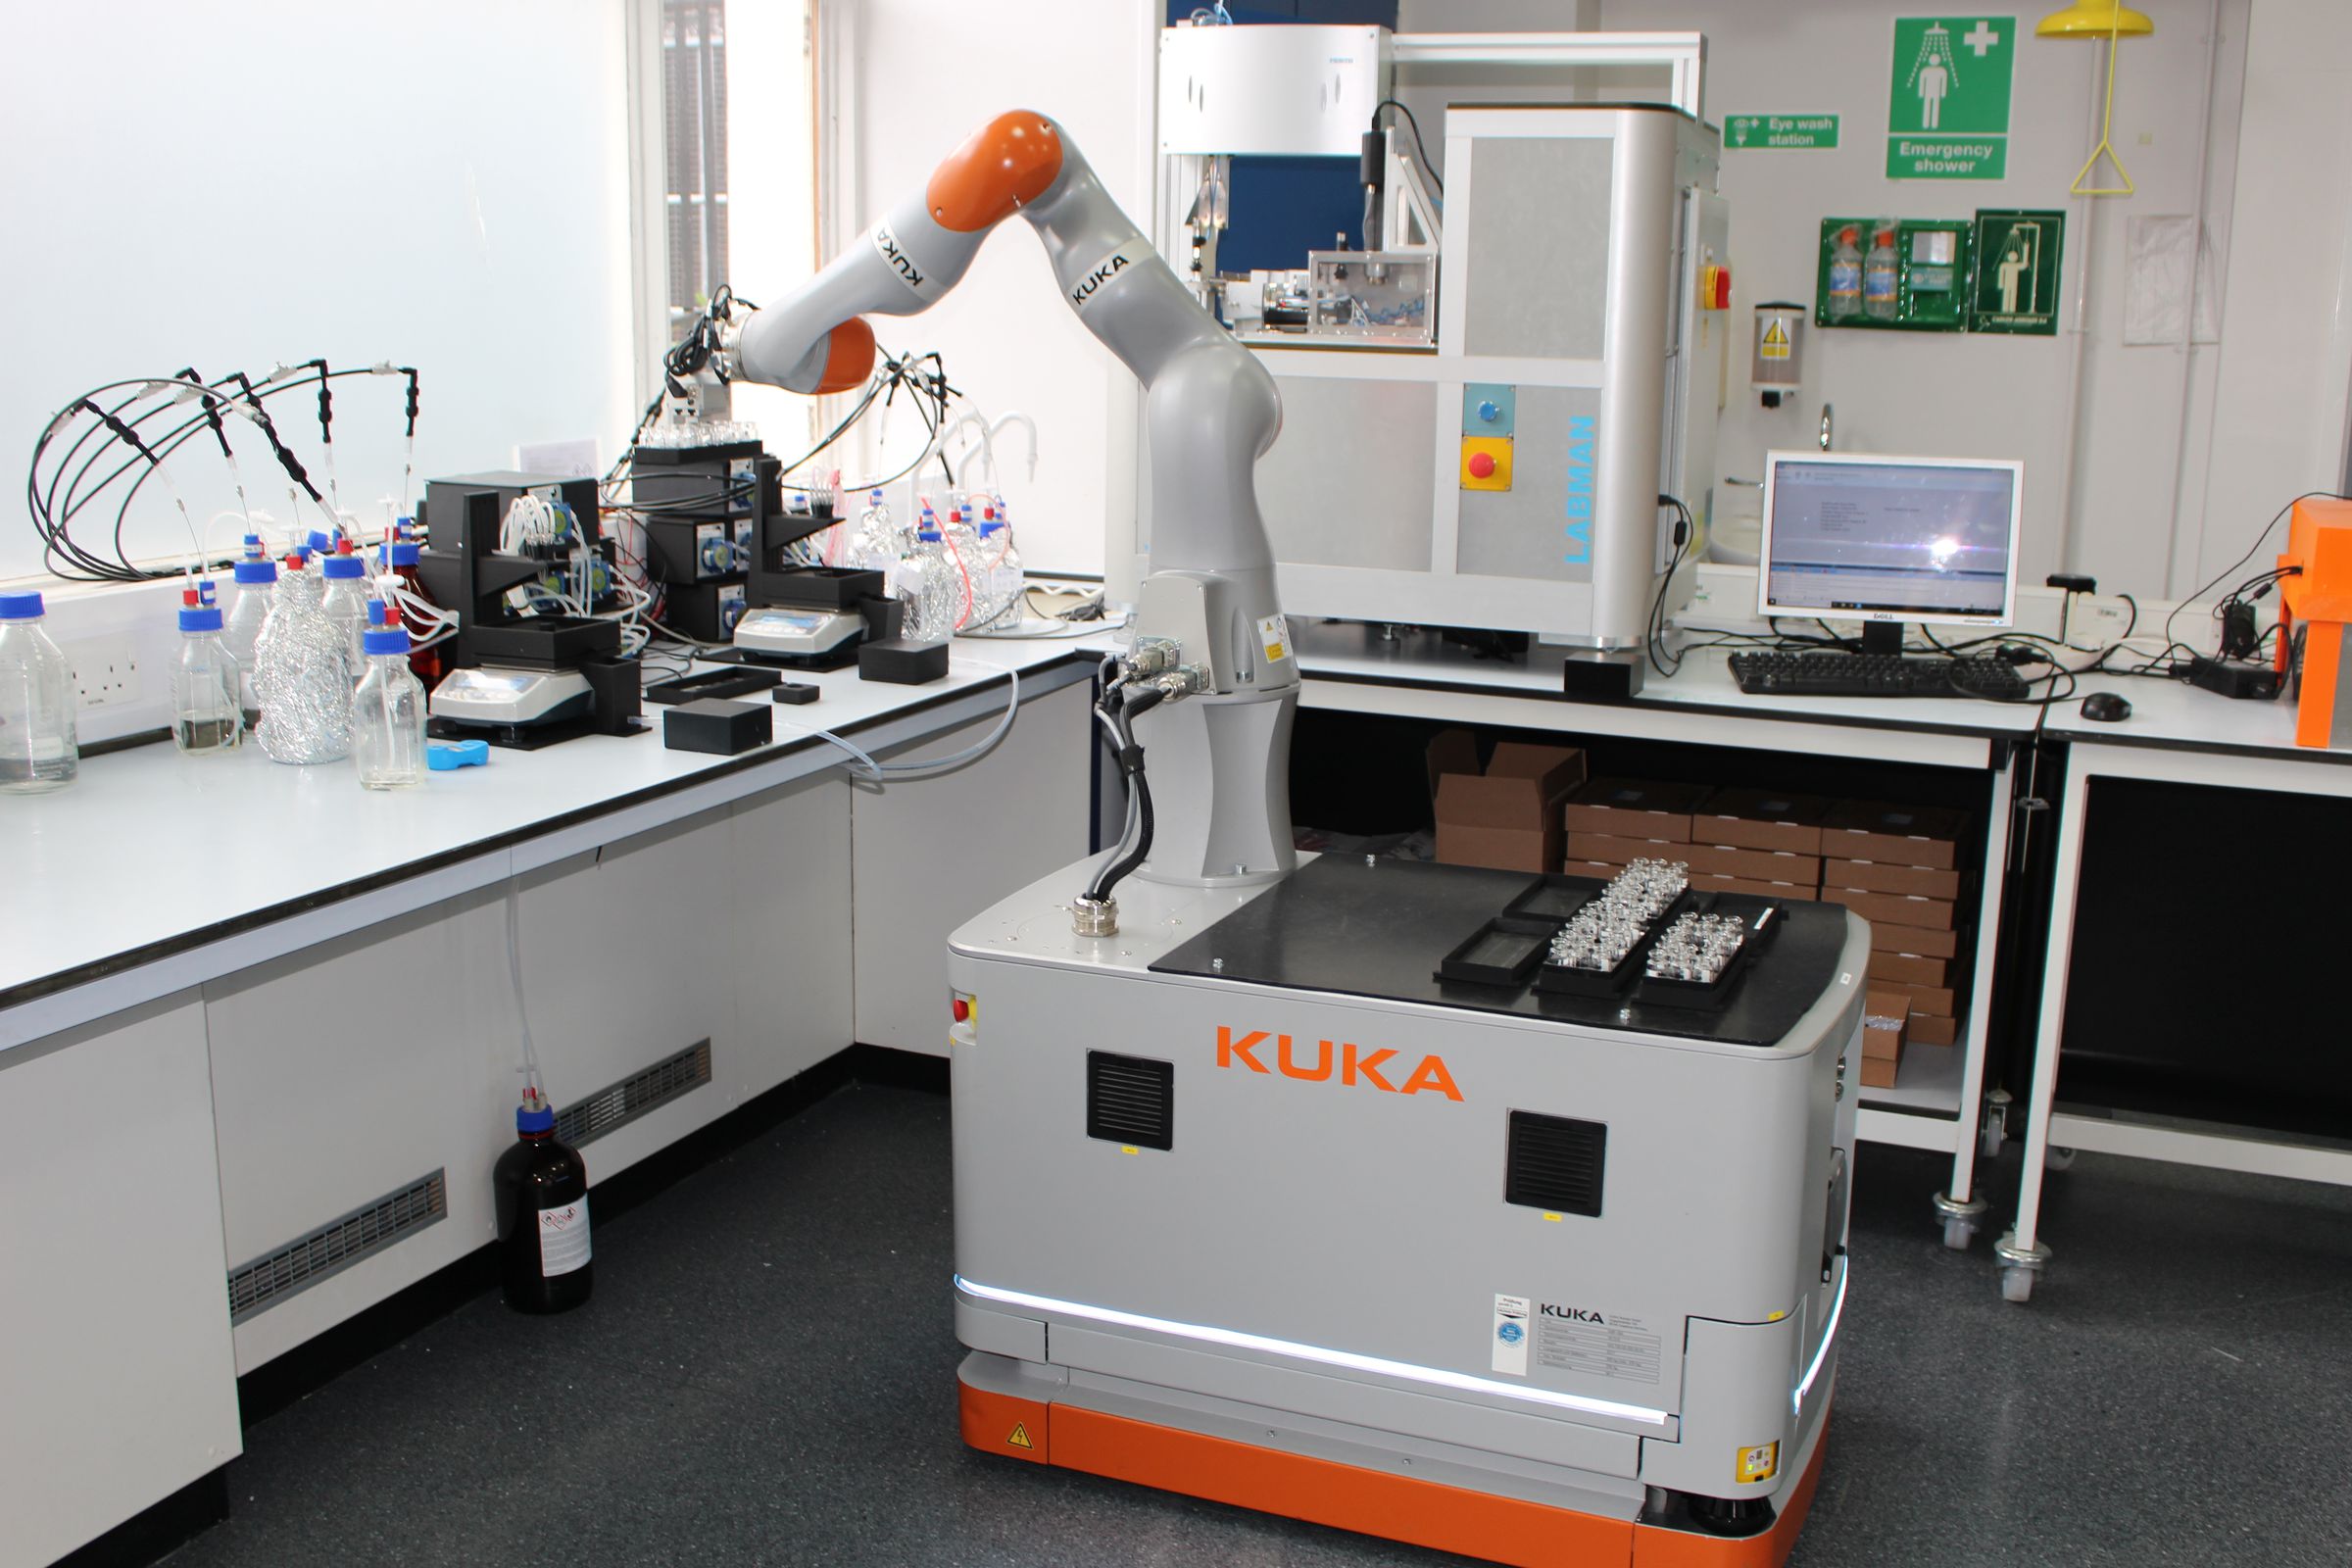 Лабораторный ассистент. Kuka робот лаборант. Роботизированная лаборатория. Лаборатория робототехники. Медицинские роботы.